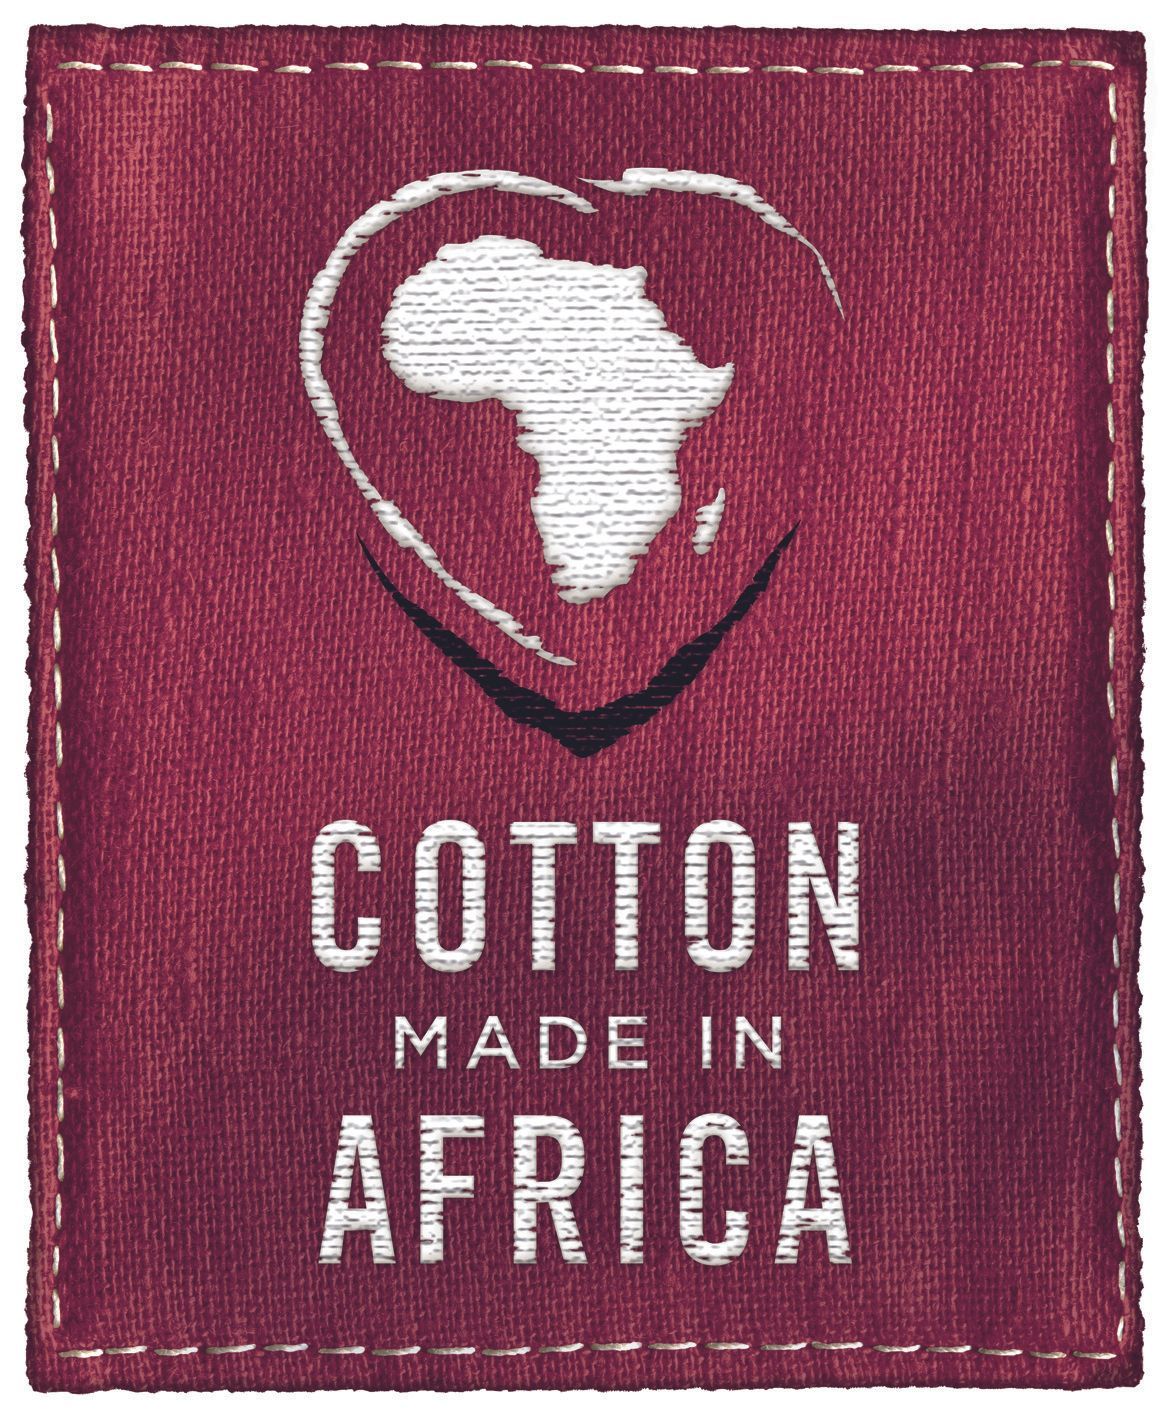 Cotton made in Africa unterstützt Kleinbauern in Afrika und ist einer der weltweit führenden Standards für nachhaltig produzierte Baumwolle. Kinderarbeit, der Einsatz von Pestiziden und genveränderter Baumwolle soll verhindert werden.